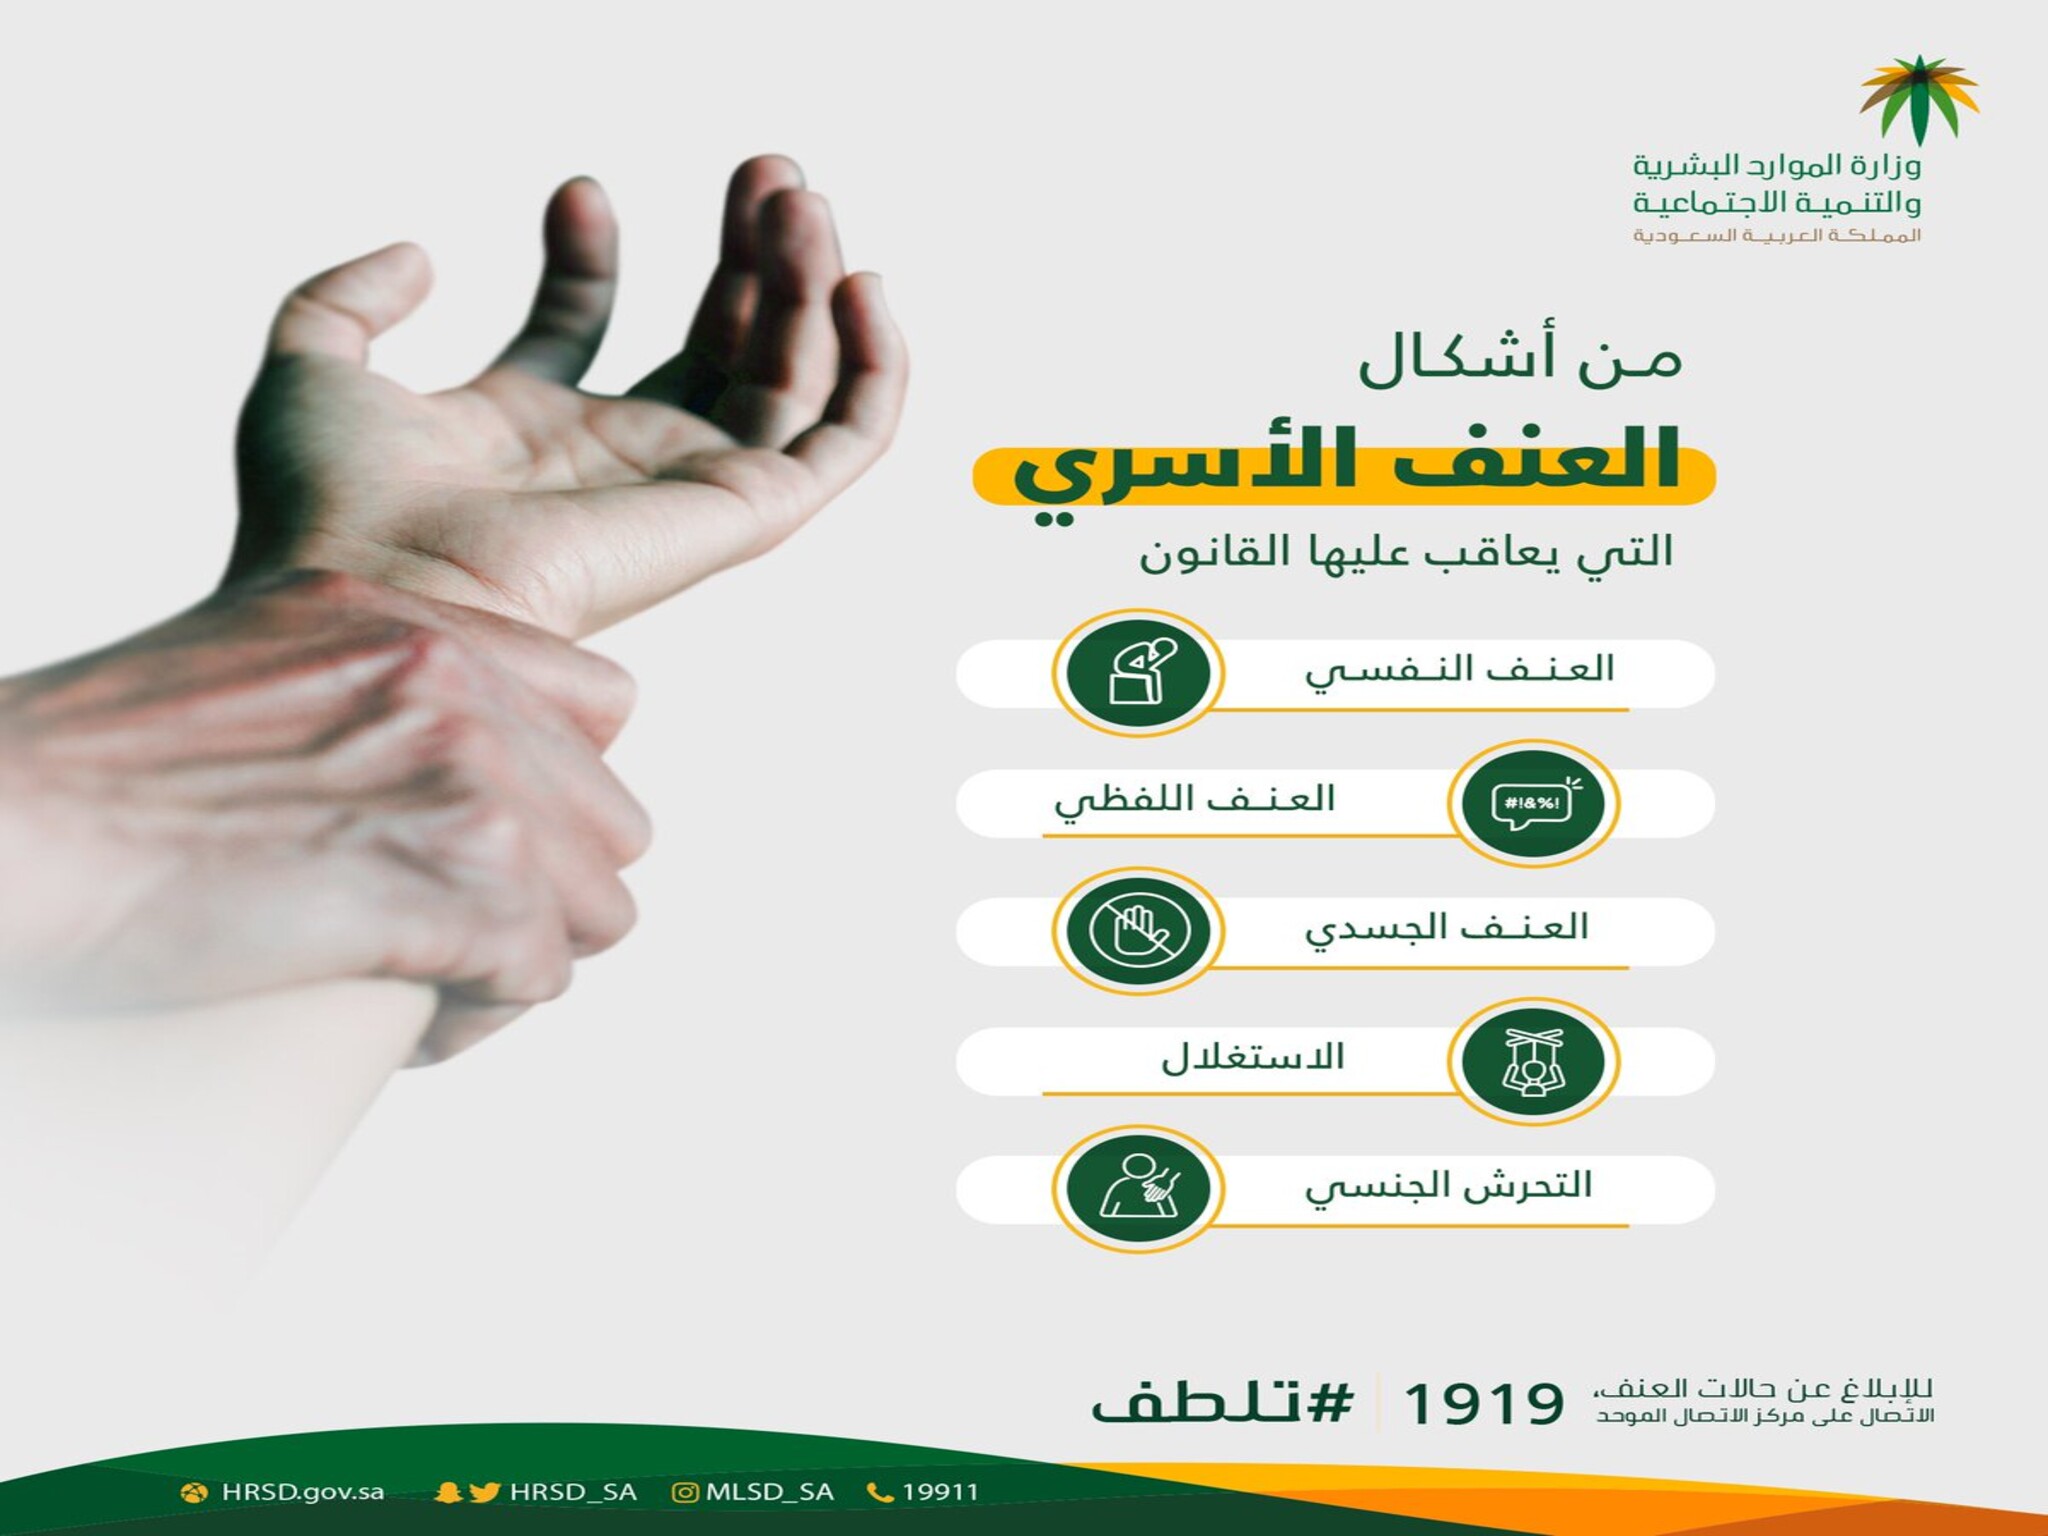 وزارة الموارد البشرية | خطوات الأبلاغ عن العنف الأسري في المملكة 